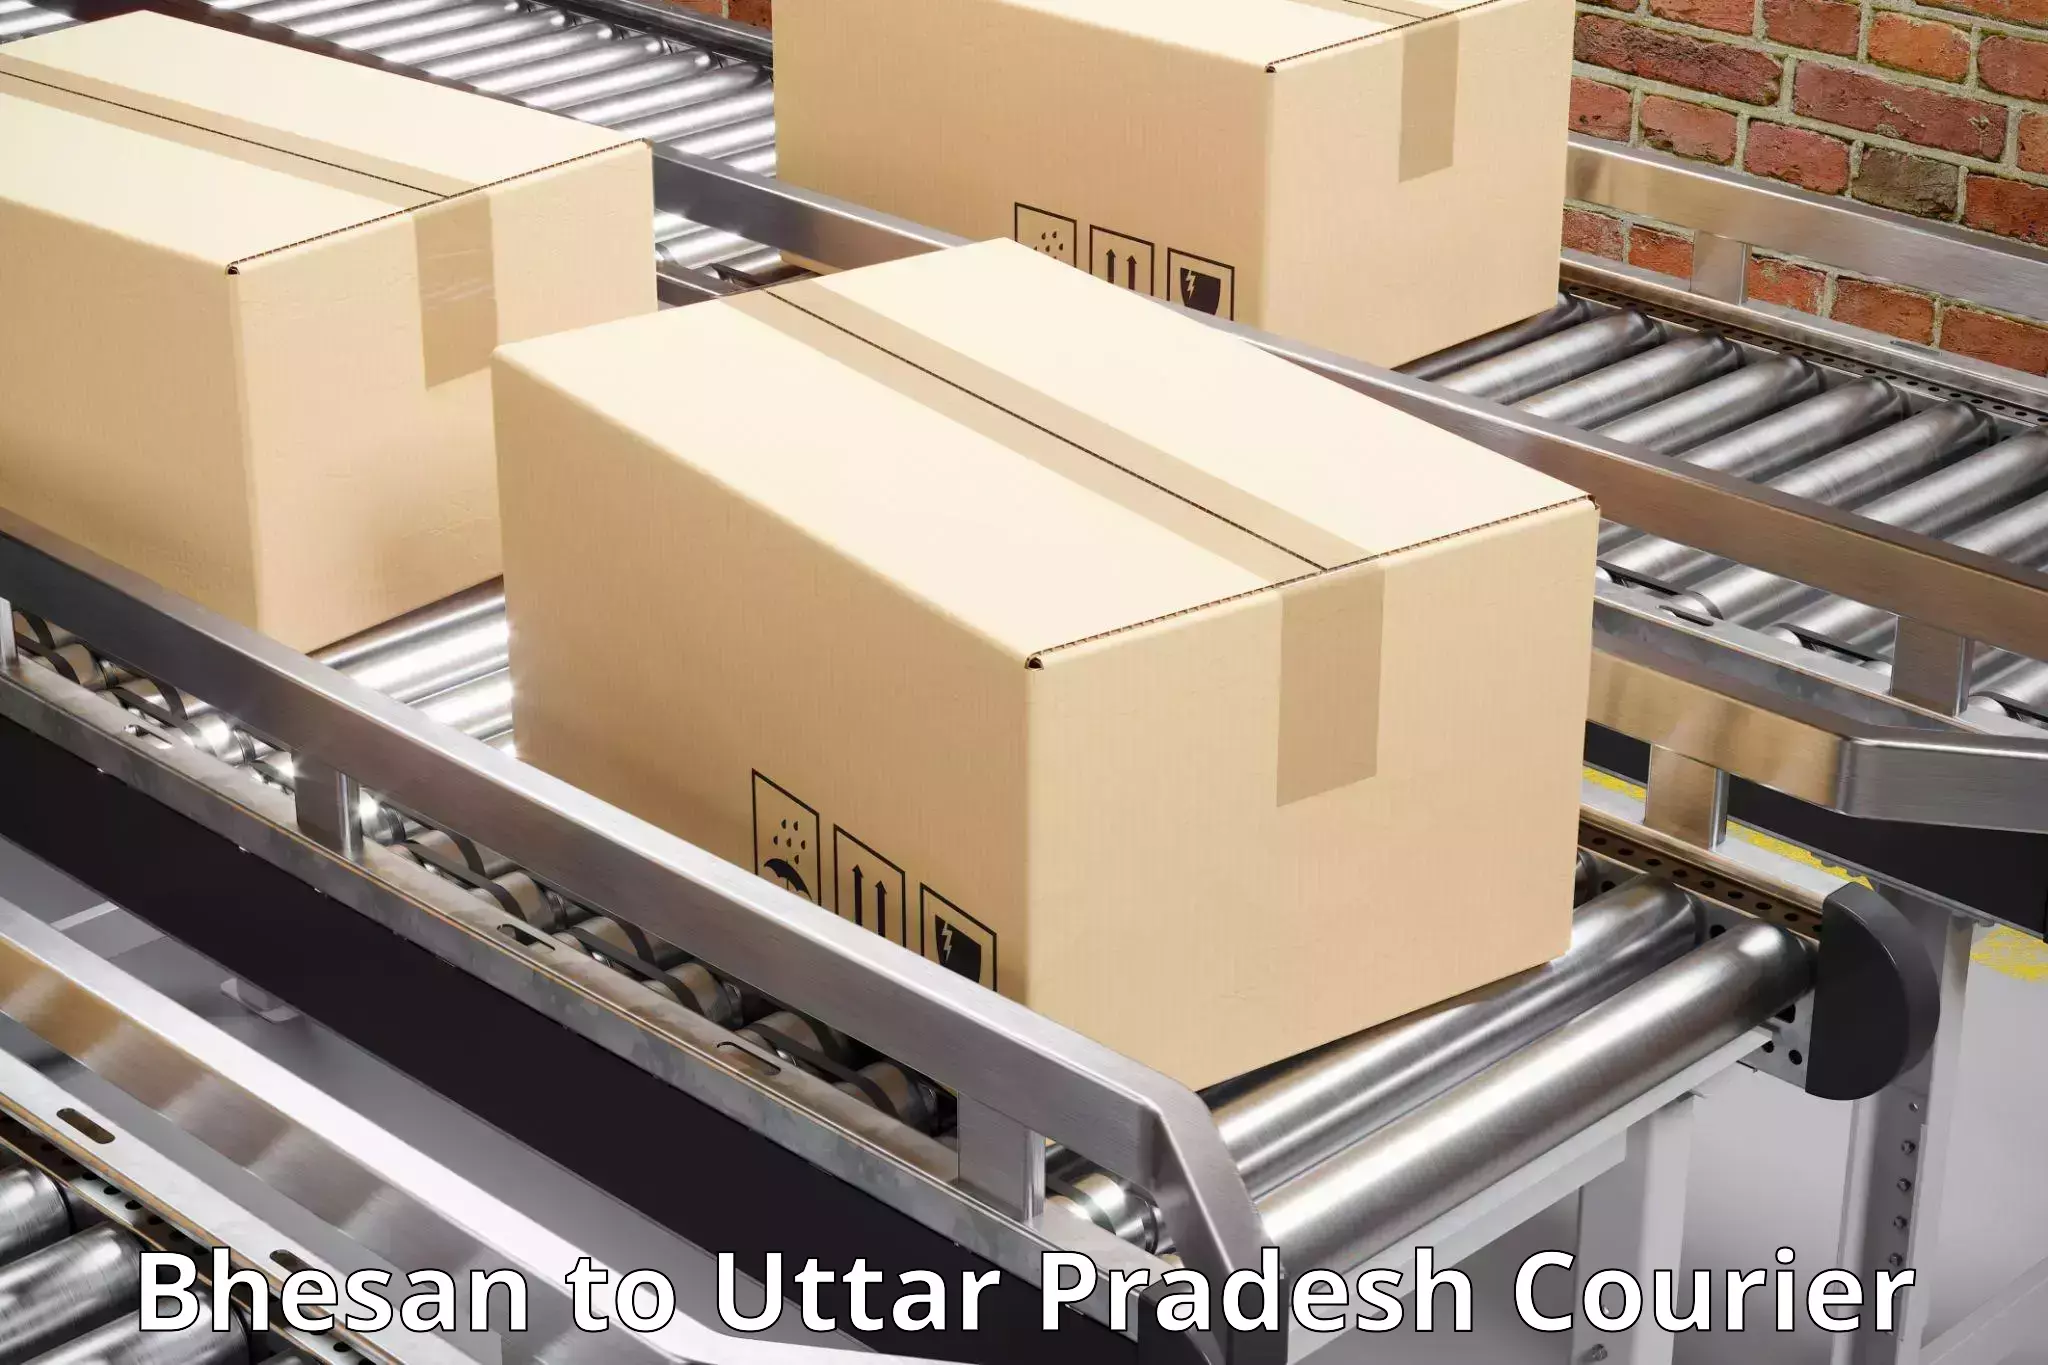 Customized shipping options Bhesan to Badlapur